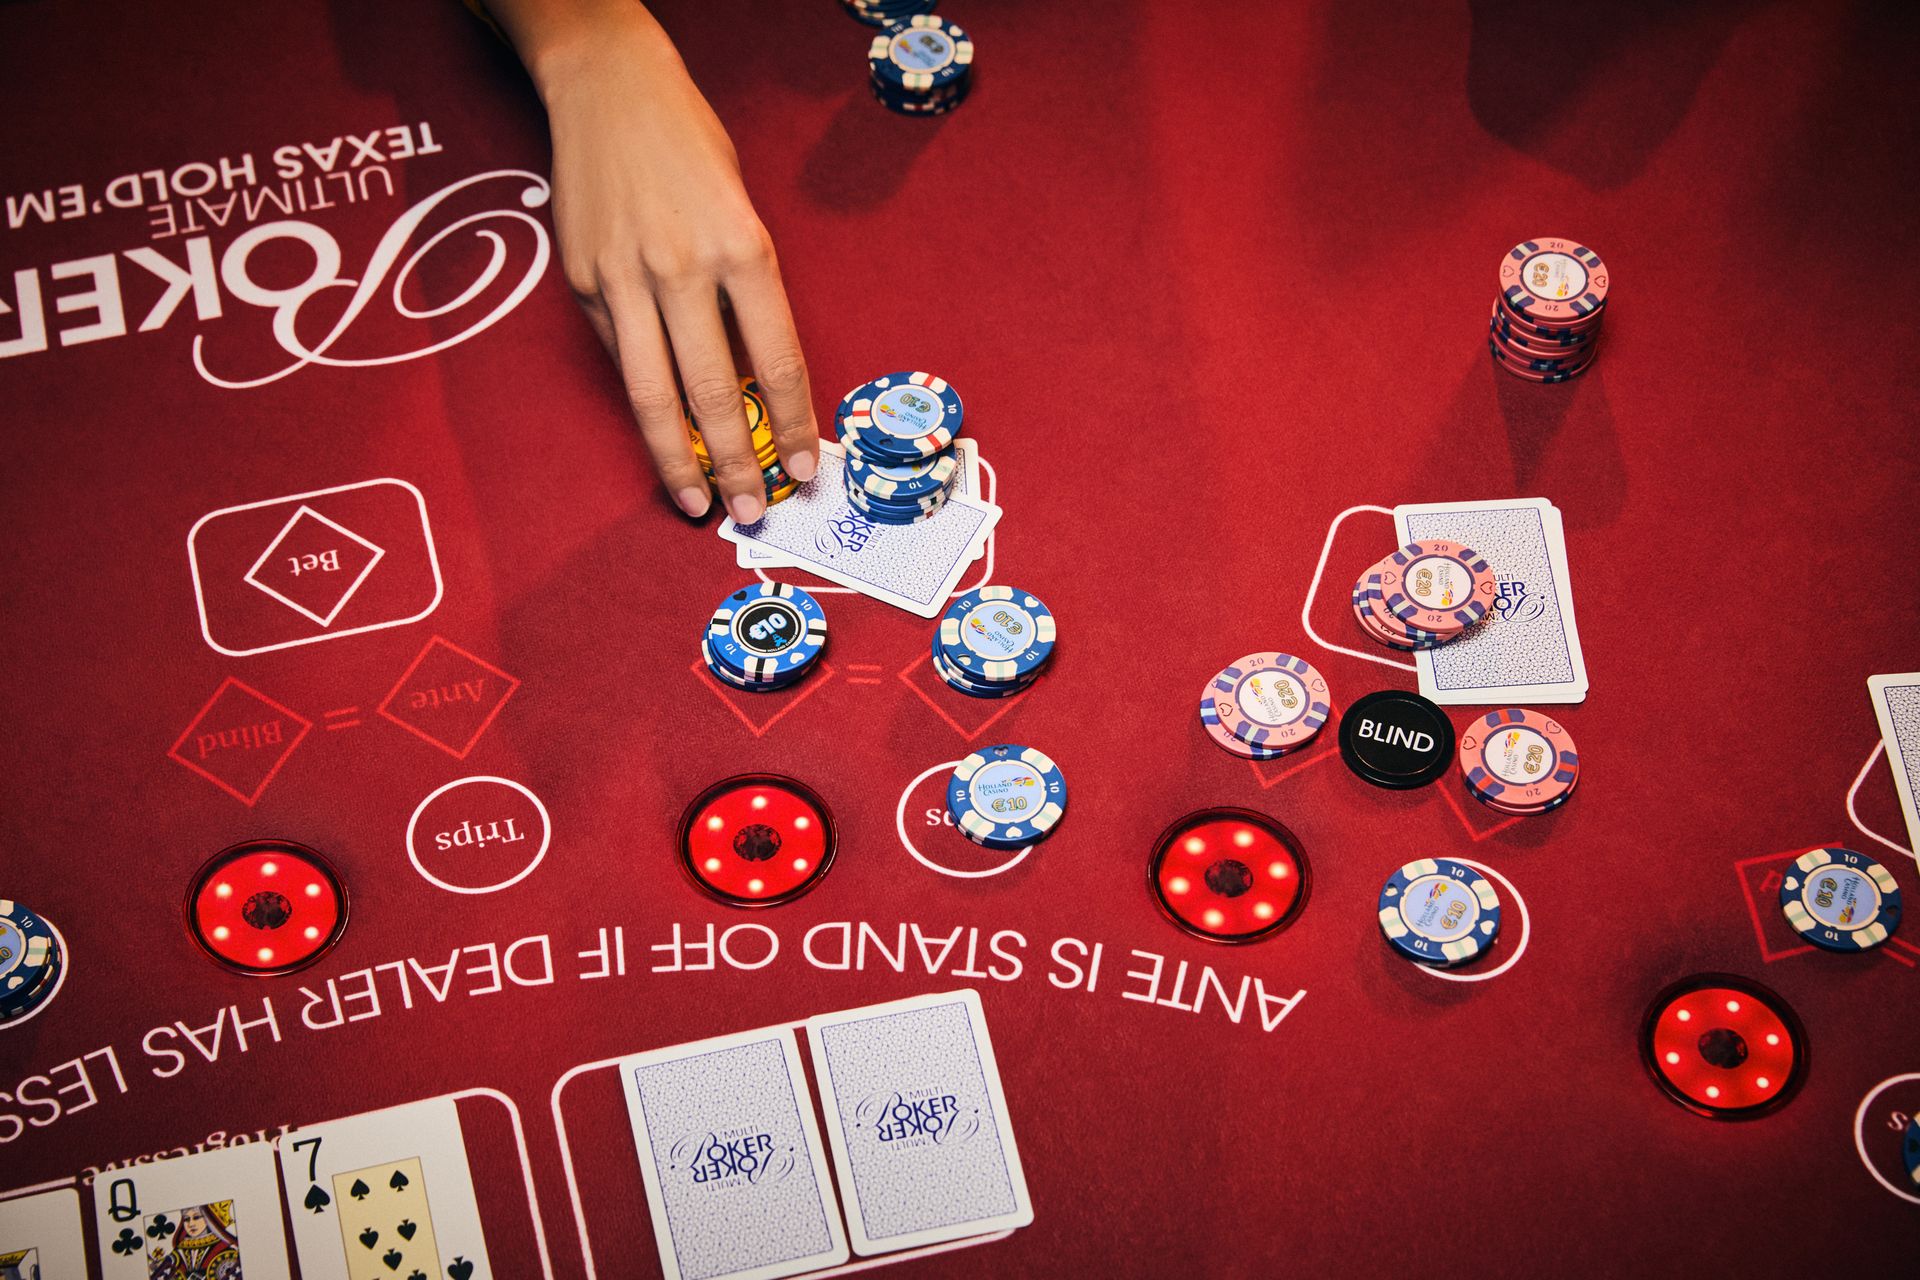 holland-casino-poker-ultimate-texas-hold'em-poker-tafel-met-vrouwelijke-hand-die-waarde-fiches-inzet-op-stapel-kaarten-legt